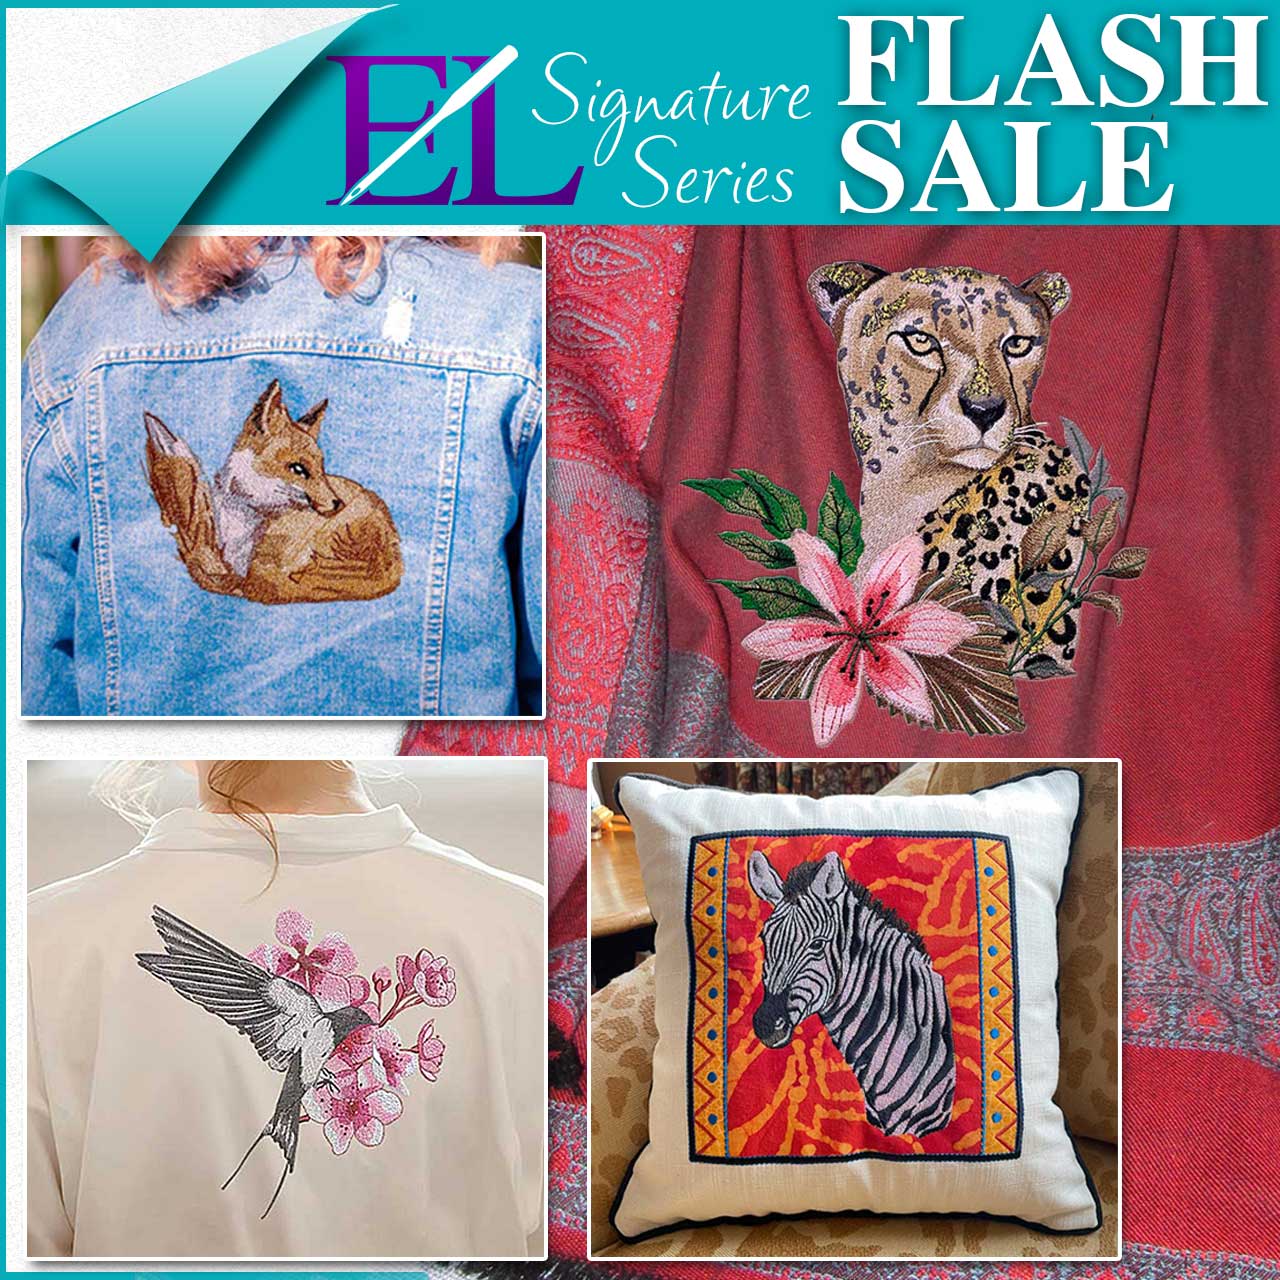 Signature Series Flash Sale Collage 2